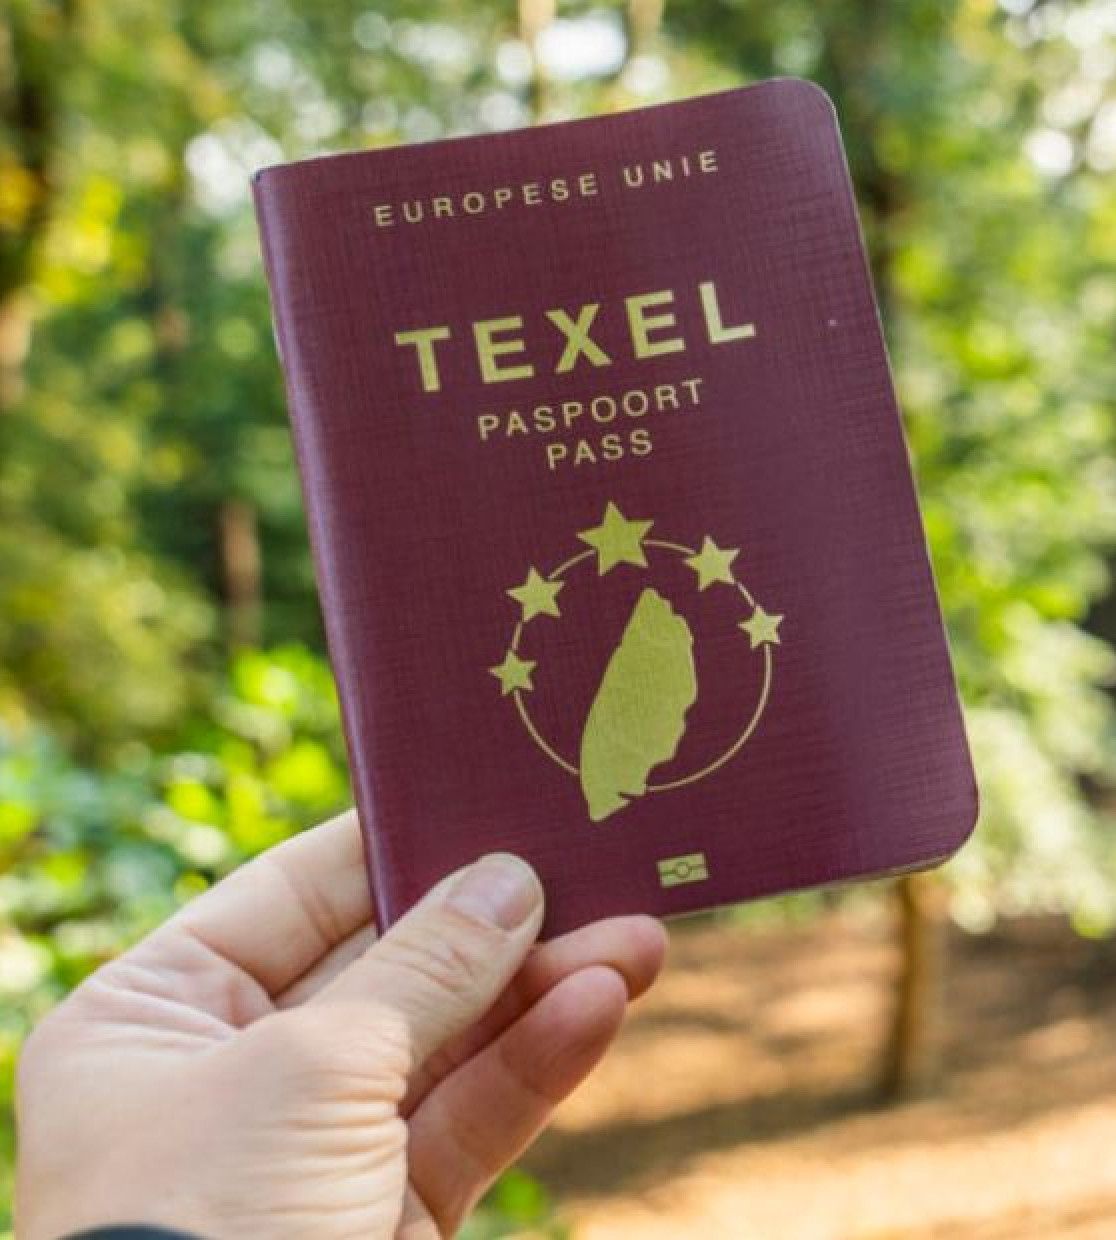 Texel Paspoort - VVV Texel - Wadden.nl